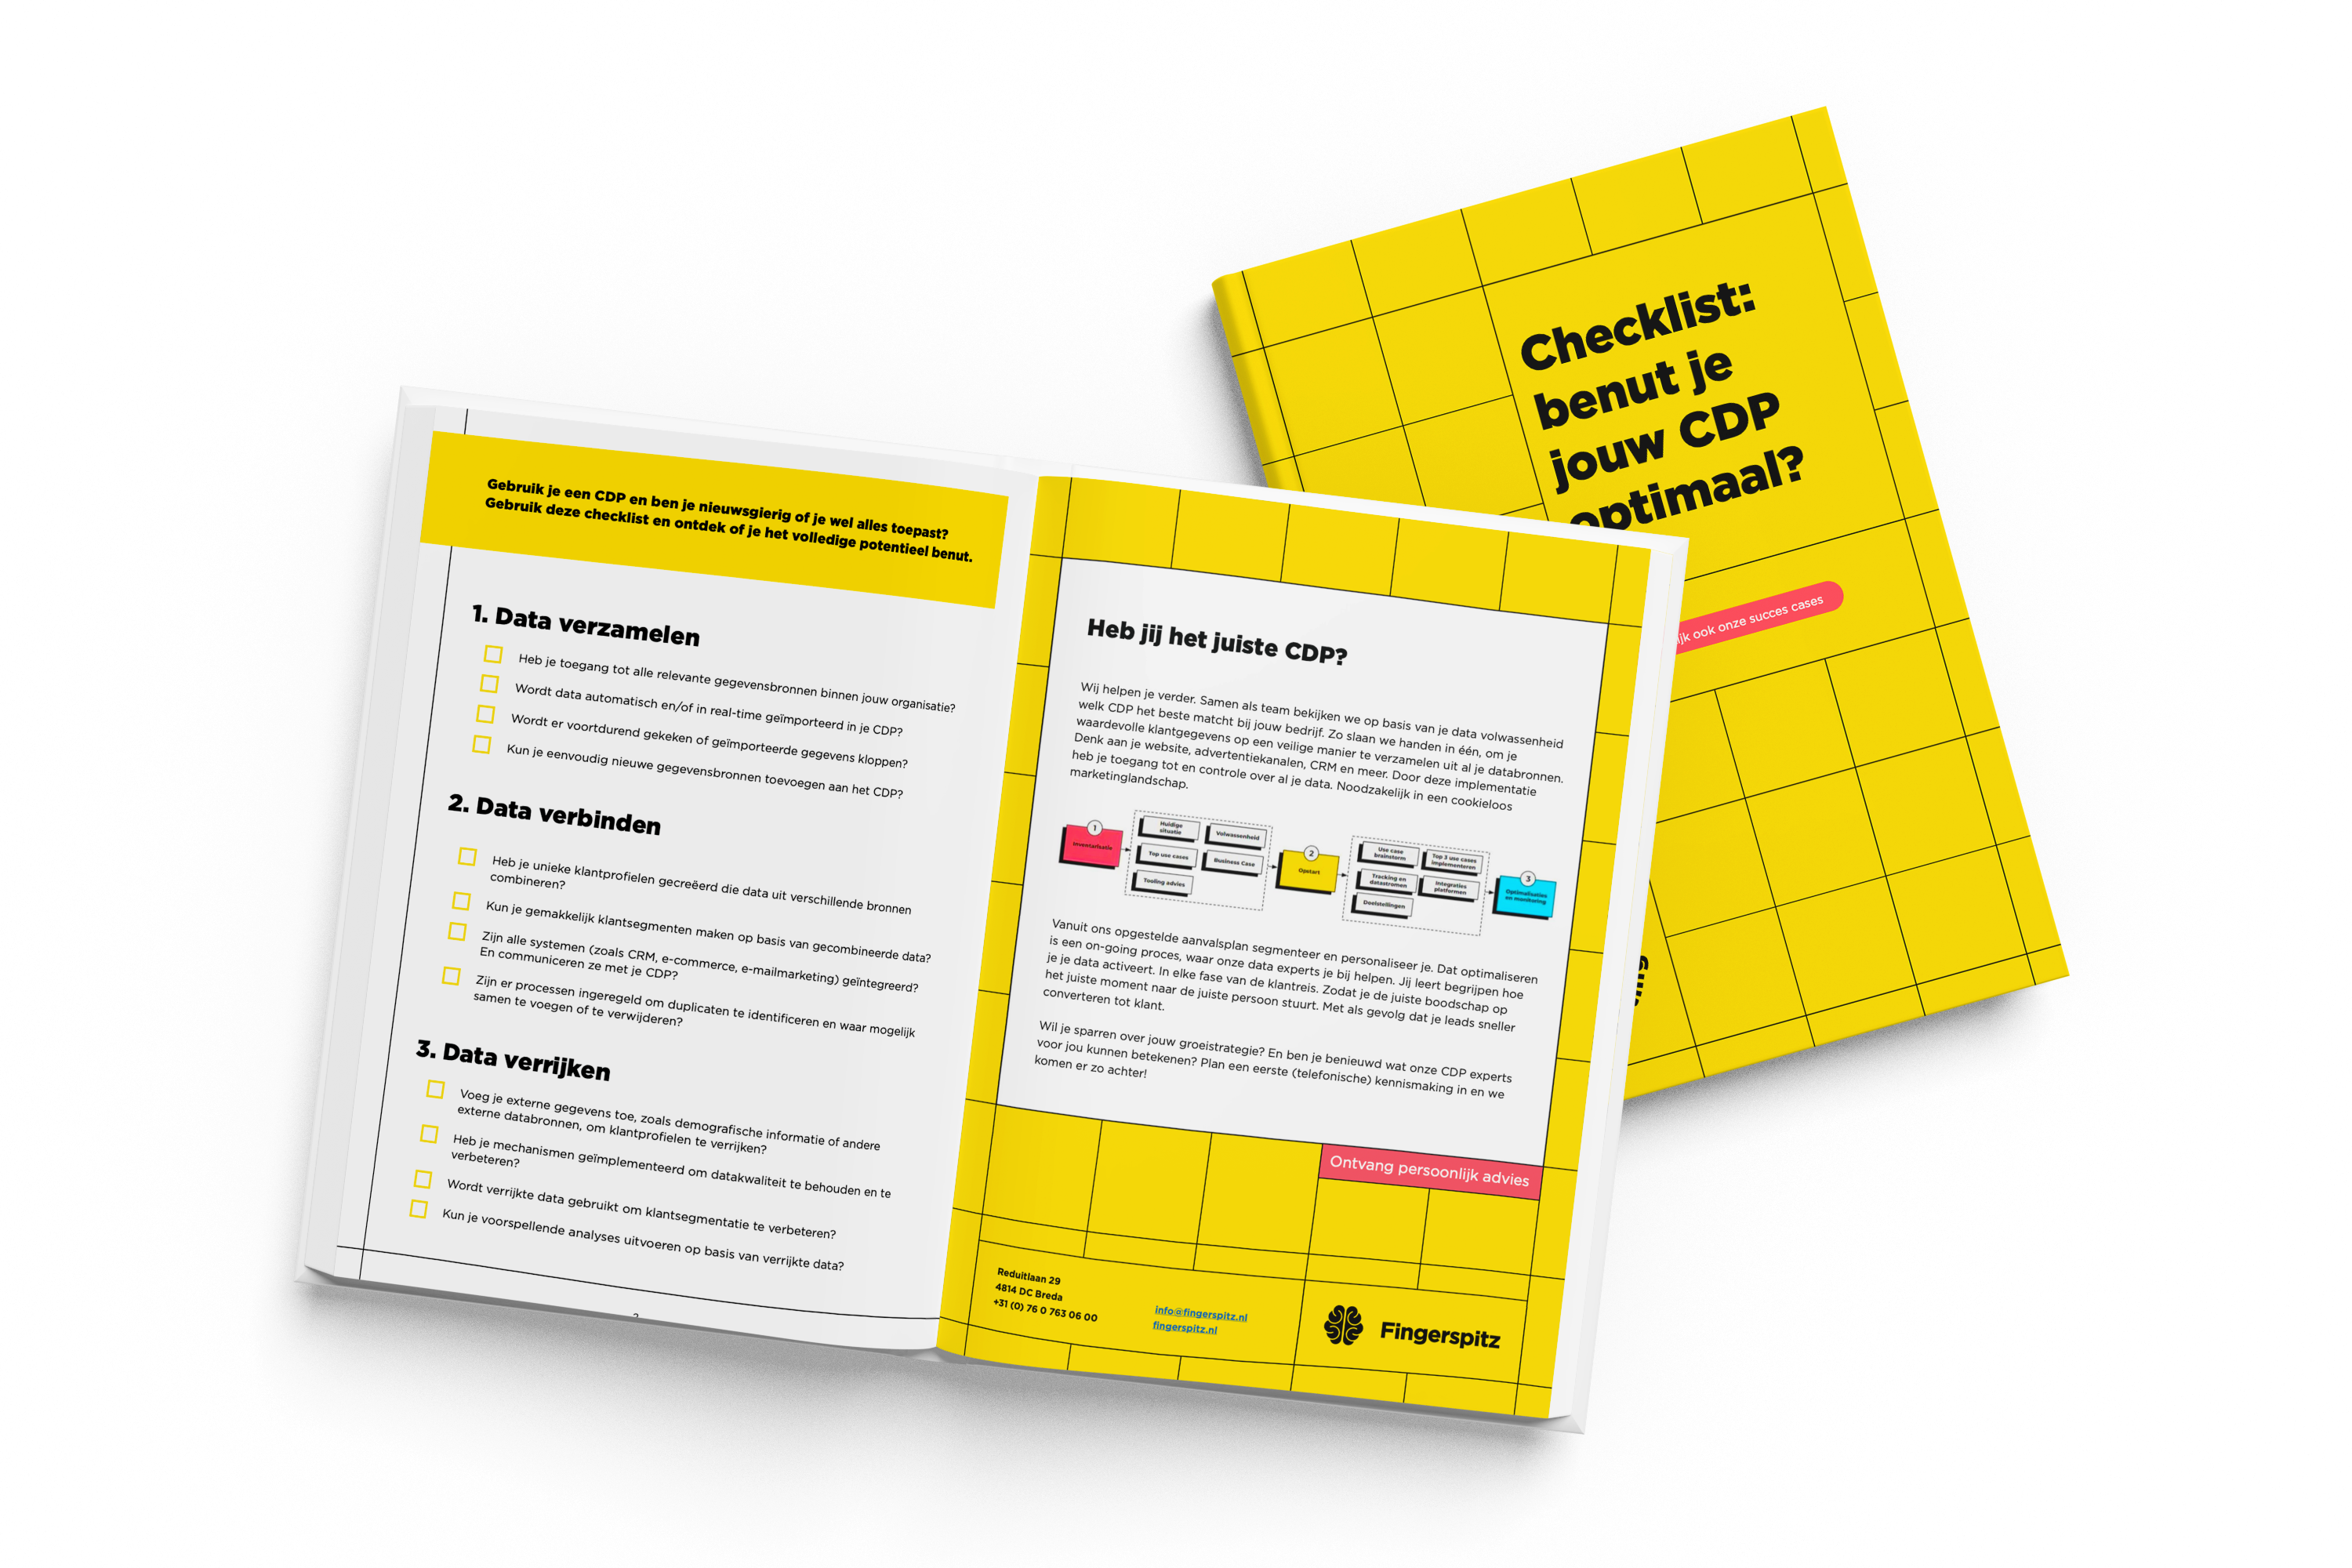 Checklist | Benut je jouw CDP optimaal?